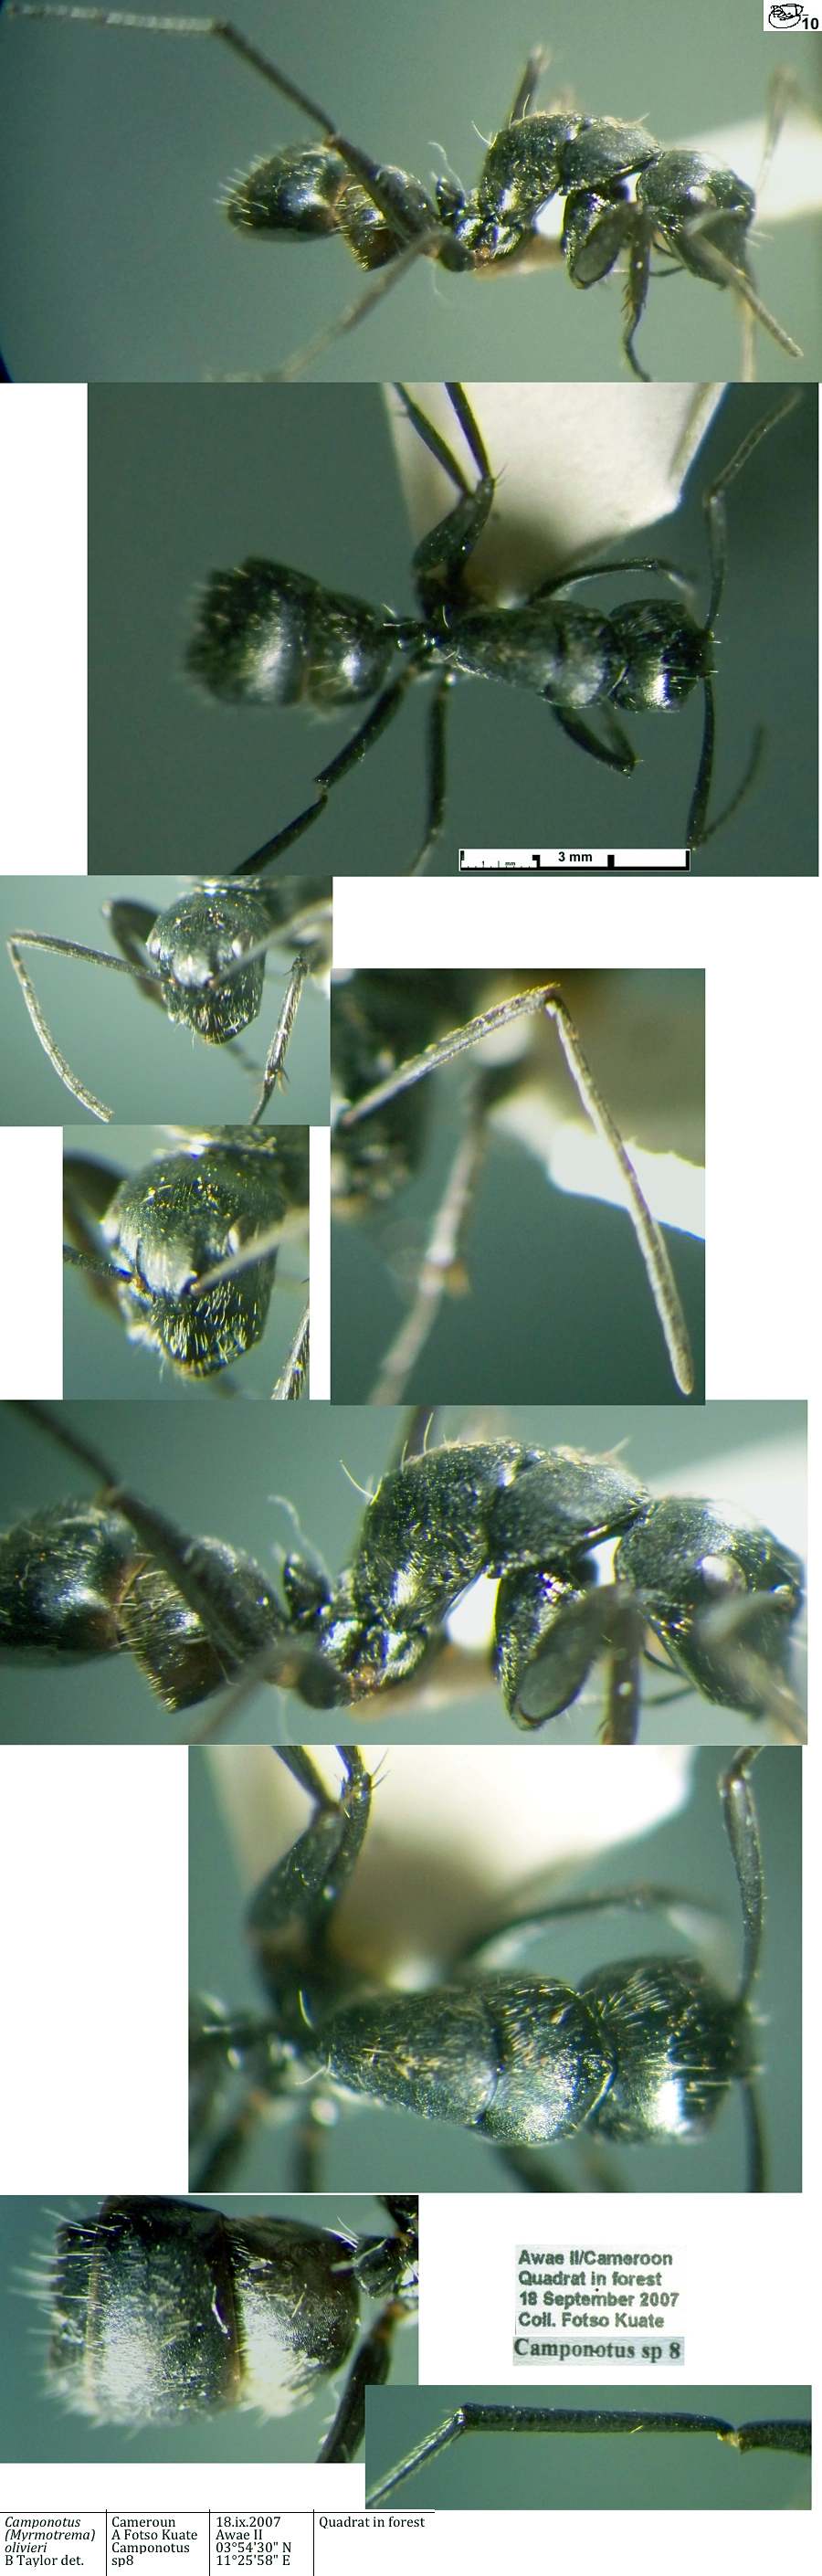 {Camponotus olivieri minor}